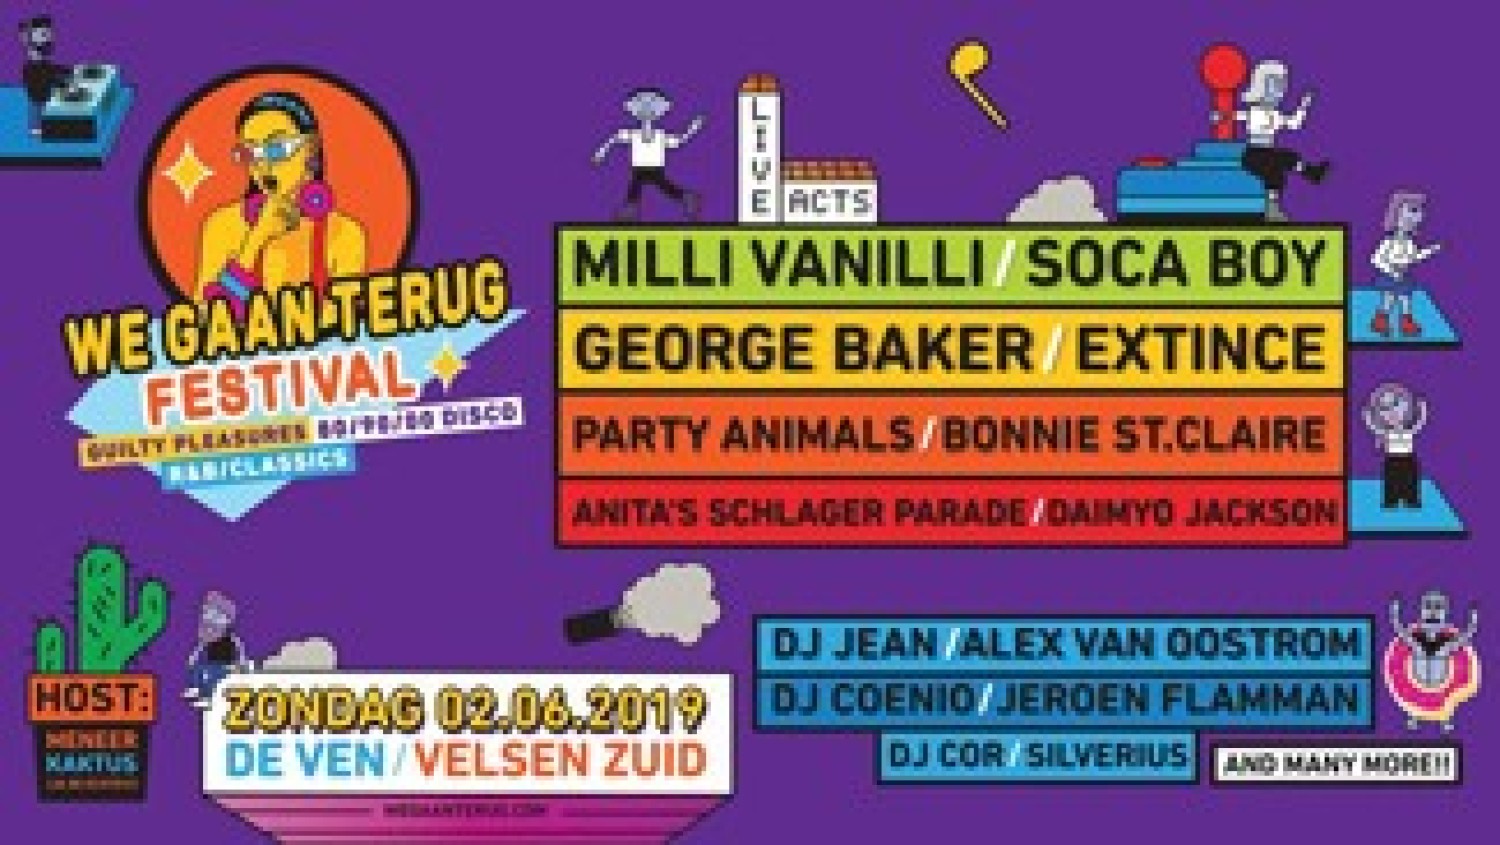 Party nieuws: We Gaan Terug Festival op zaterdag 2 juni met DJ Jean